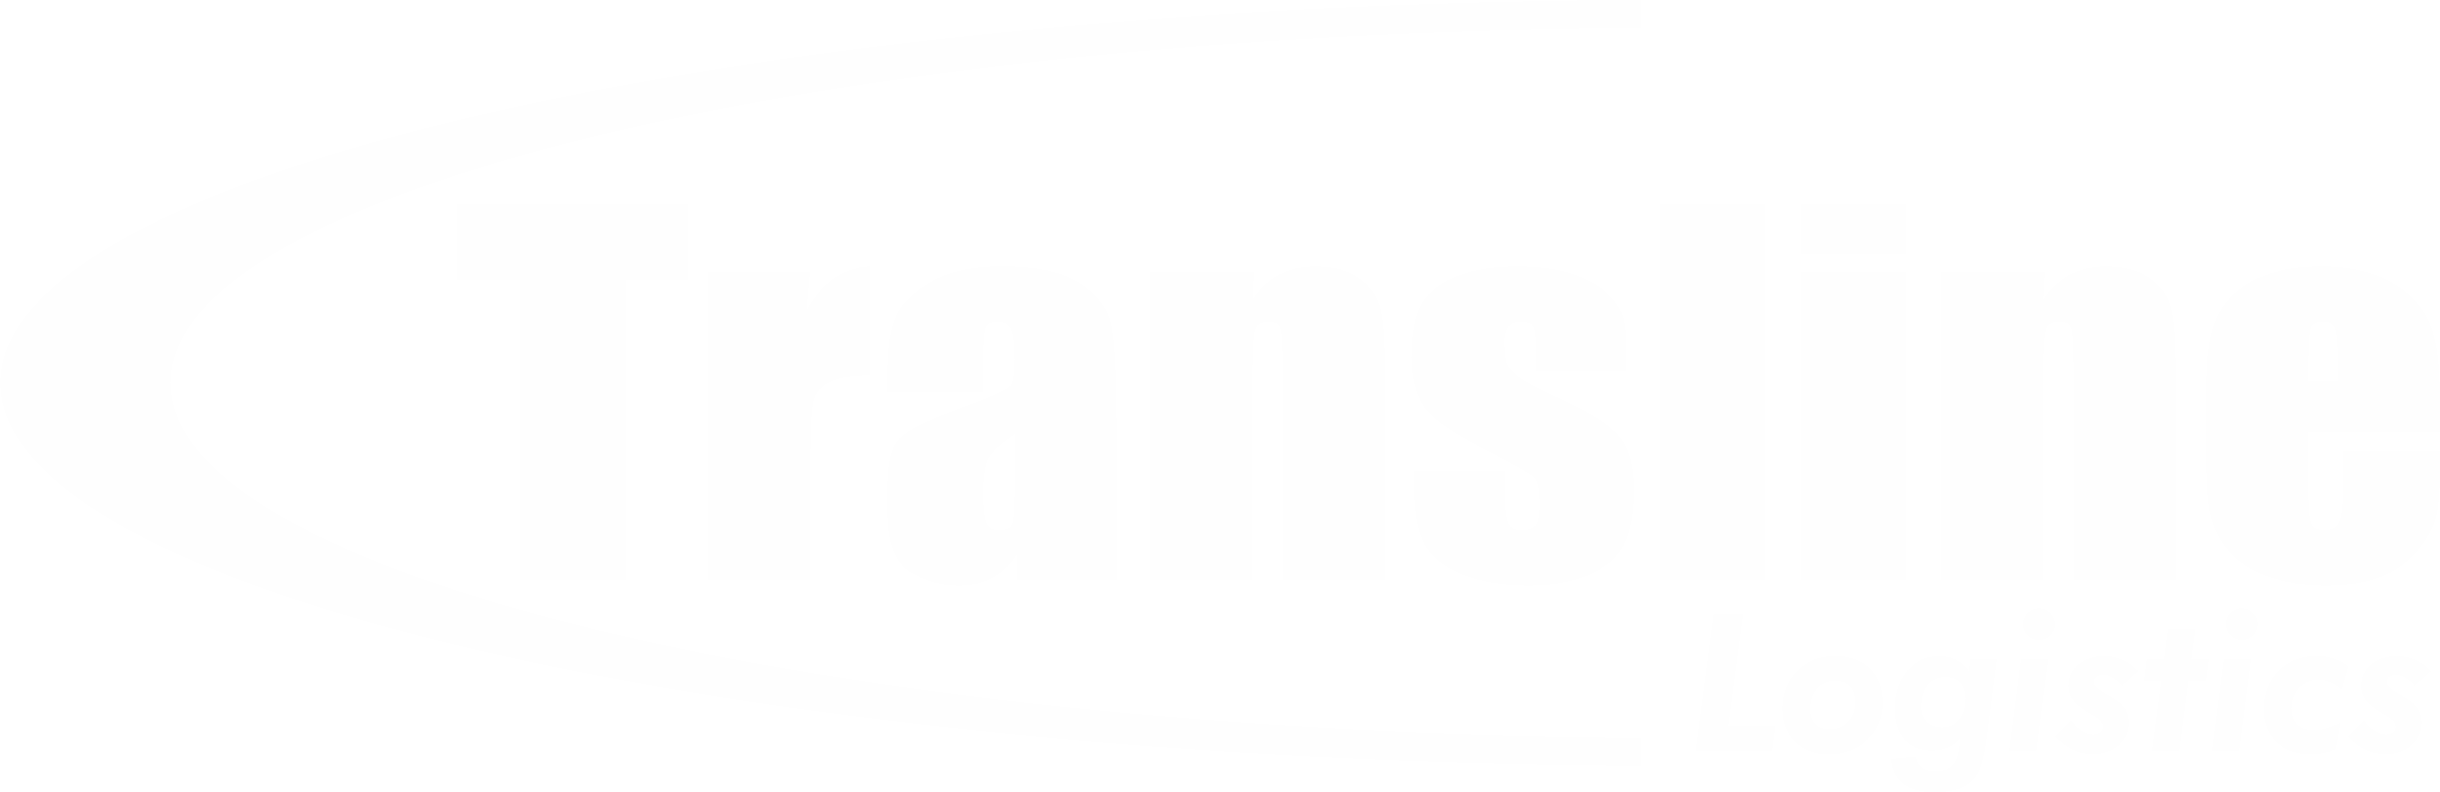 Transline original logo